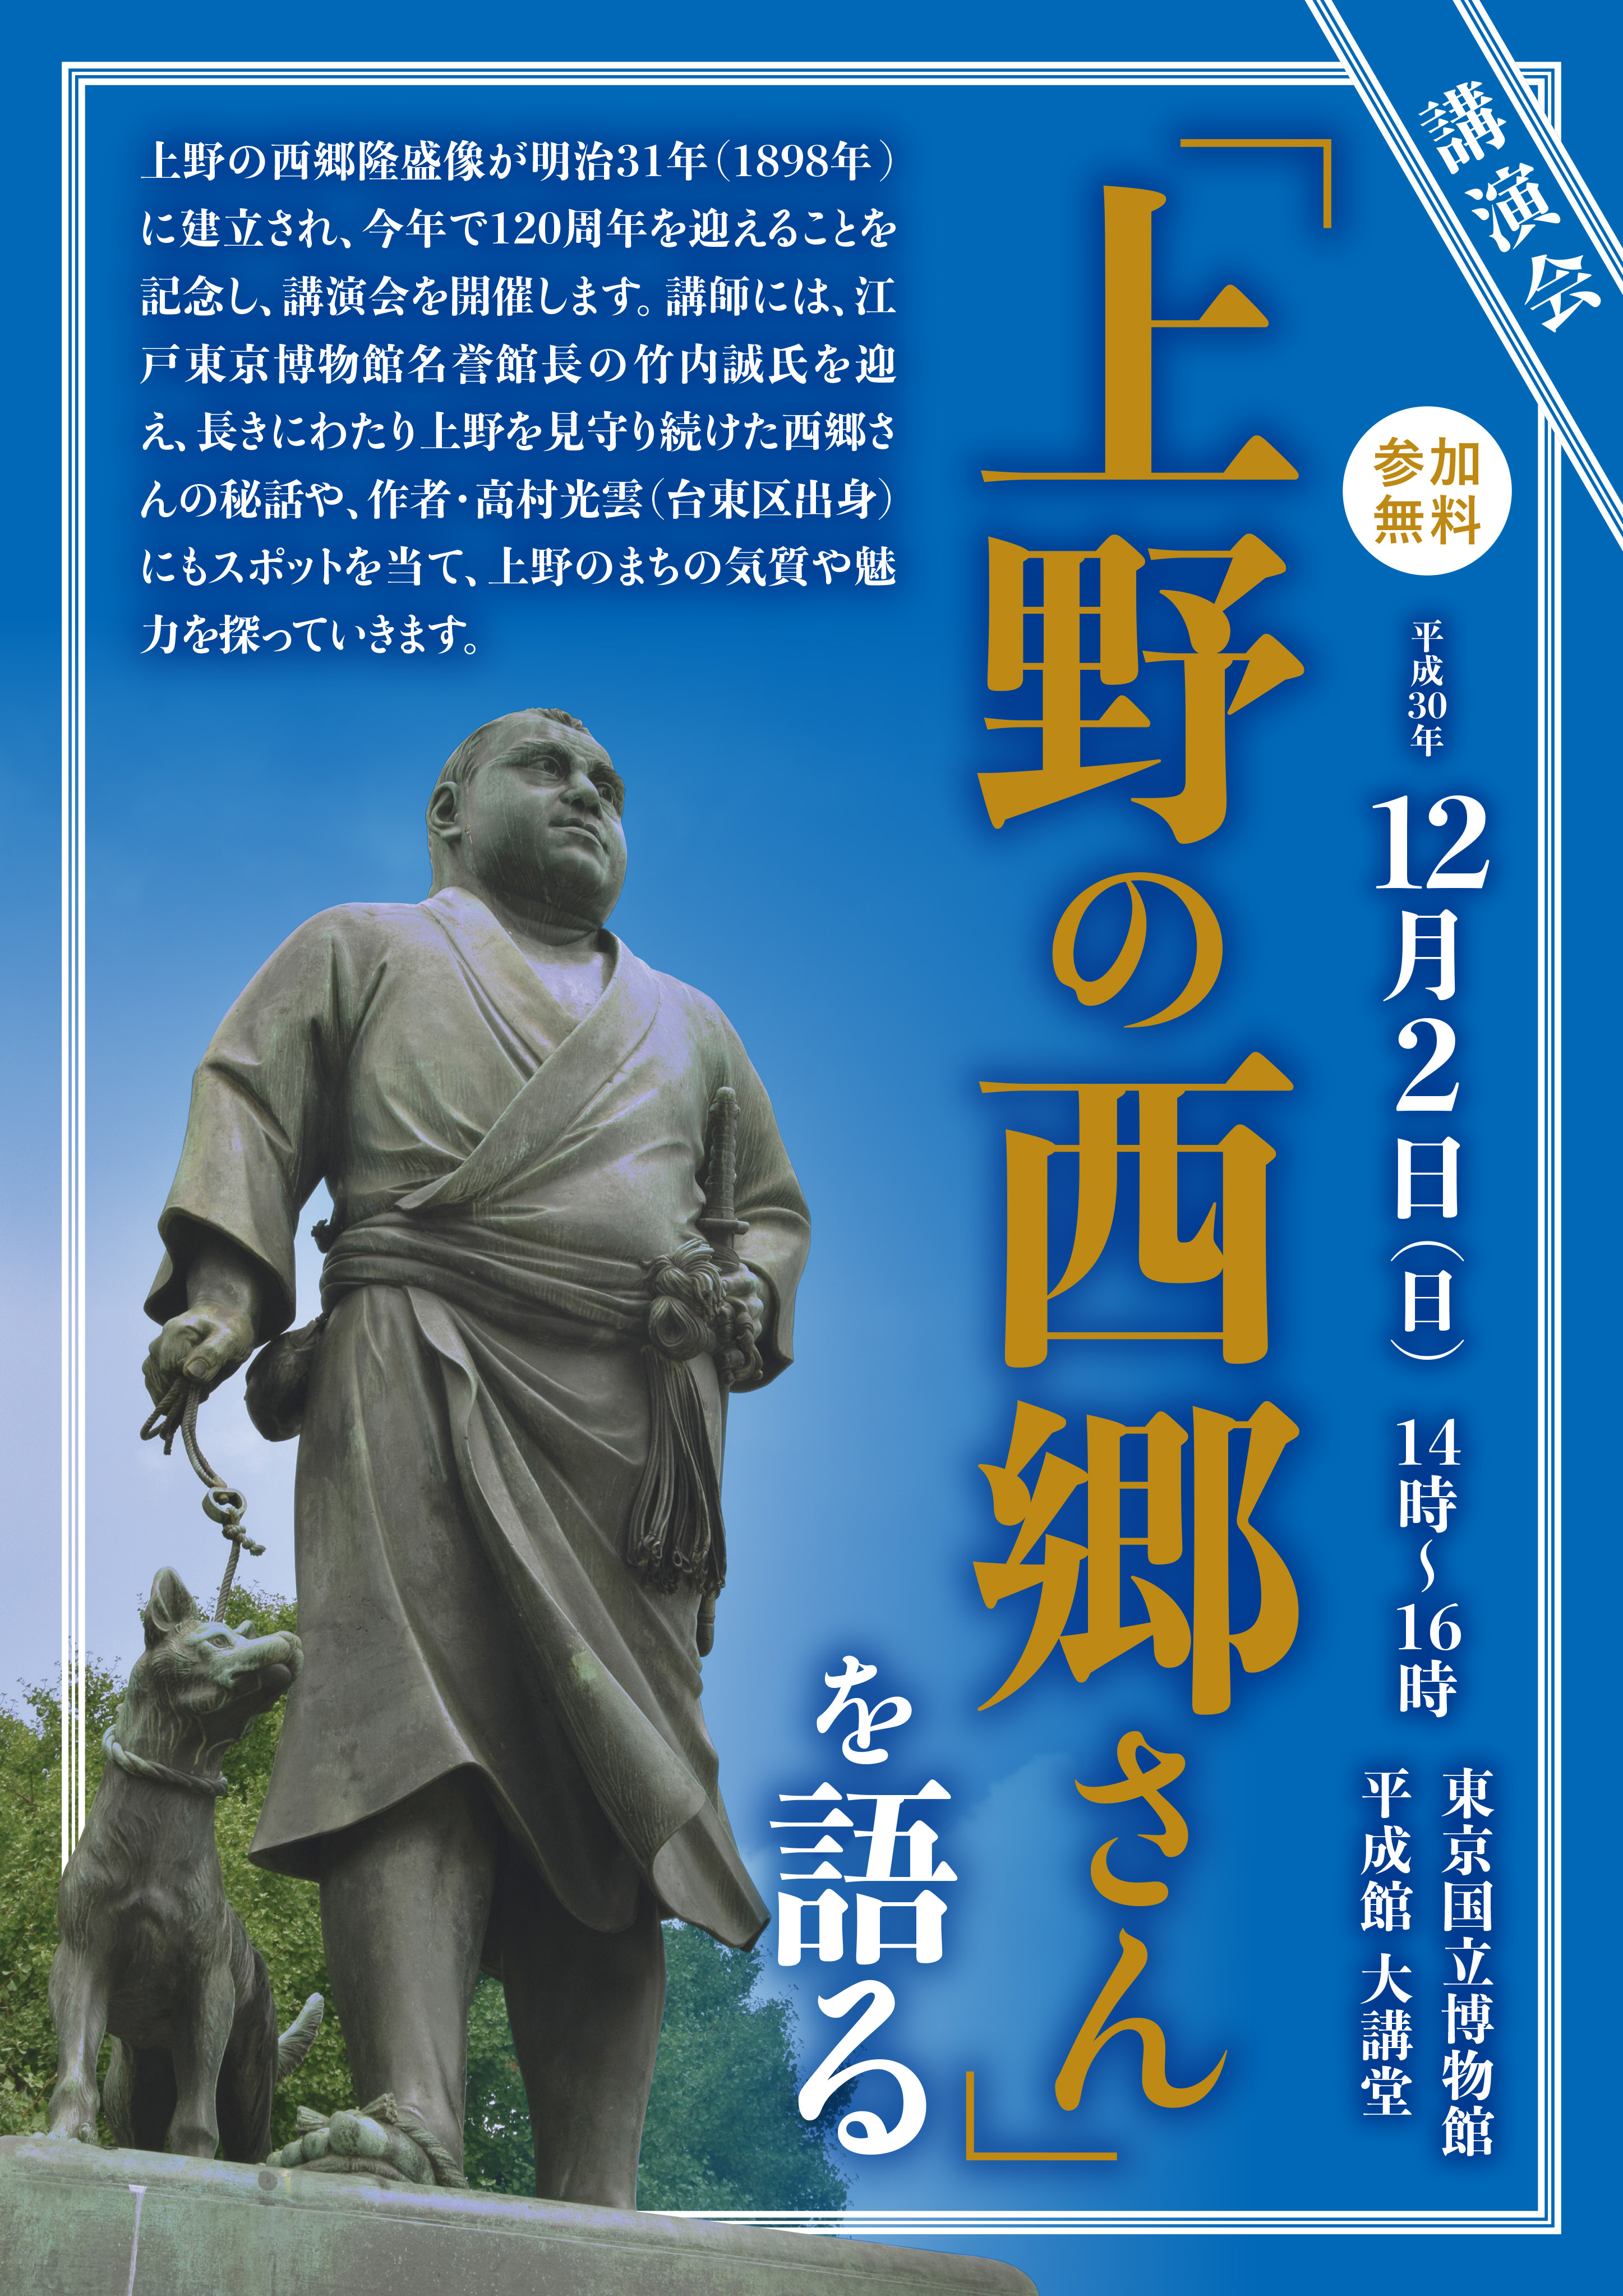 「西郷隆盛像建立１２０周年記念講演会『上野の西郷さん』を語る」申込が開始しました。